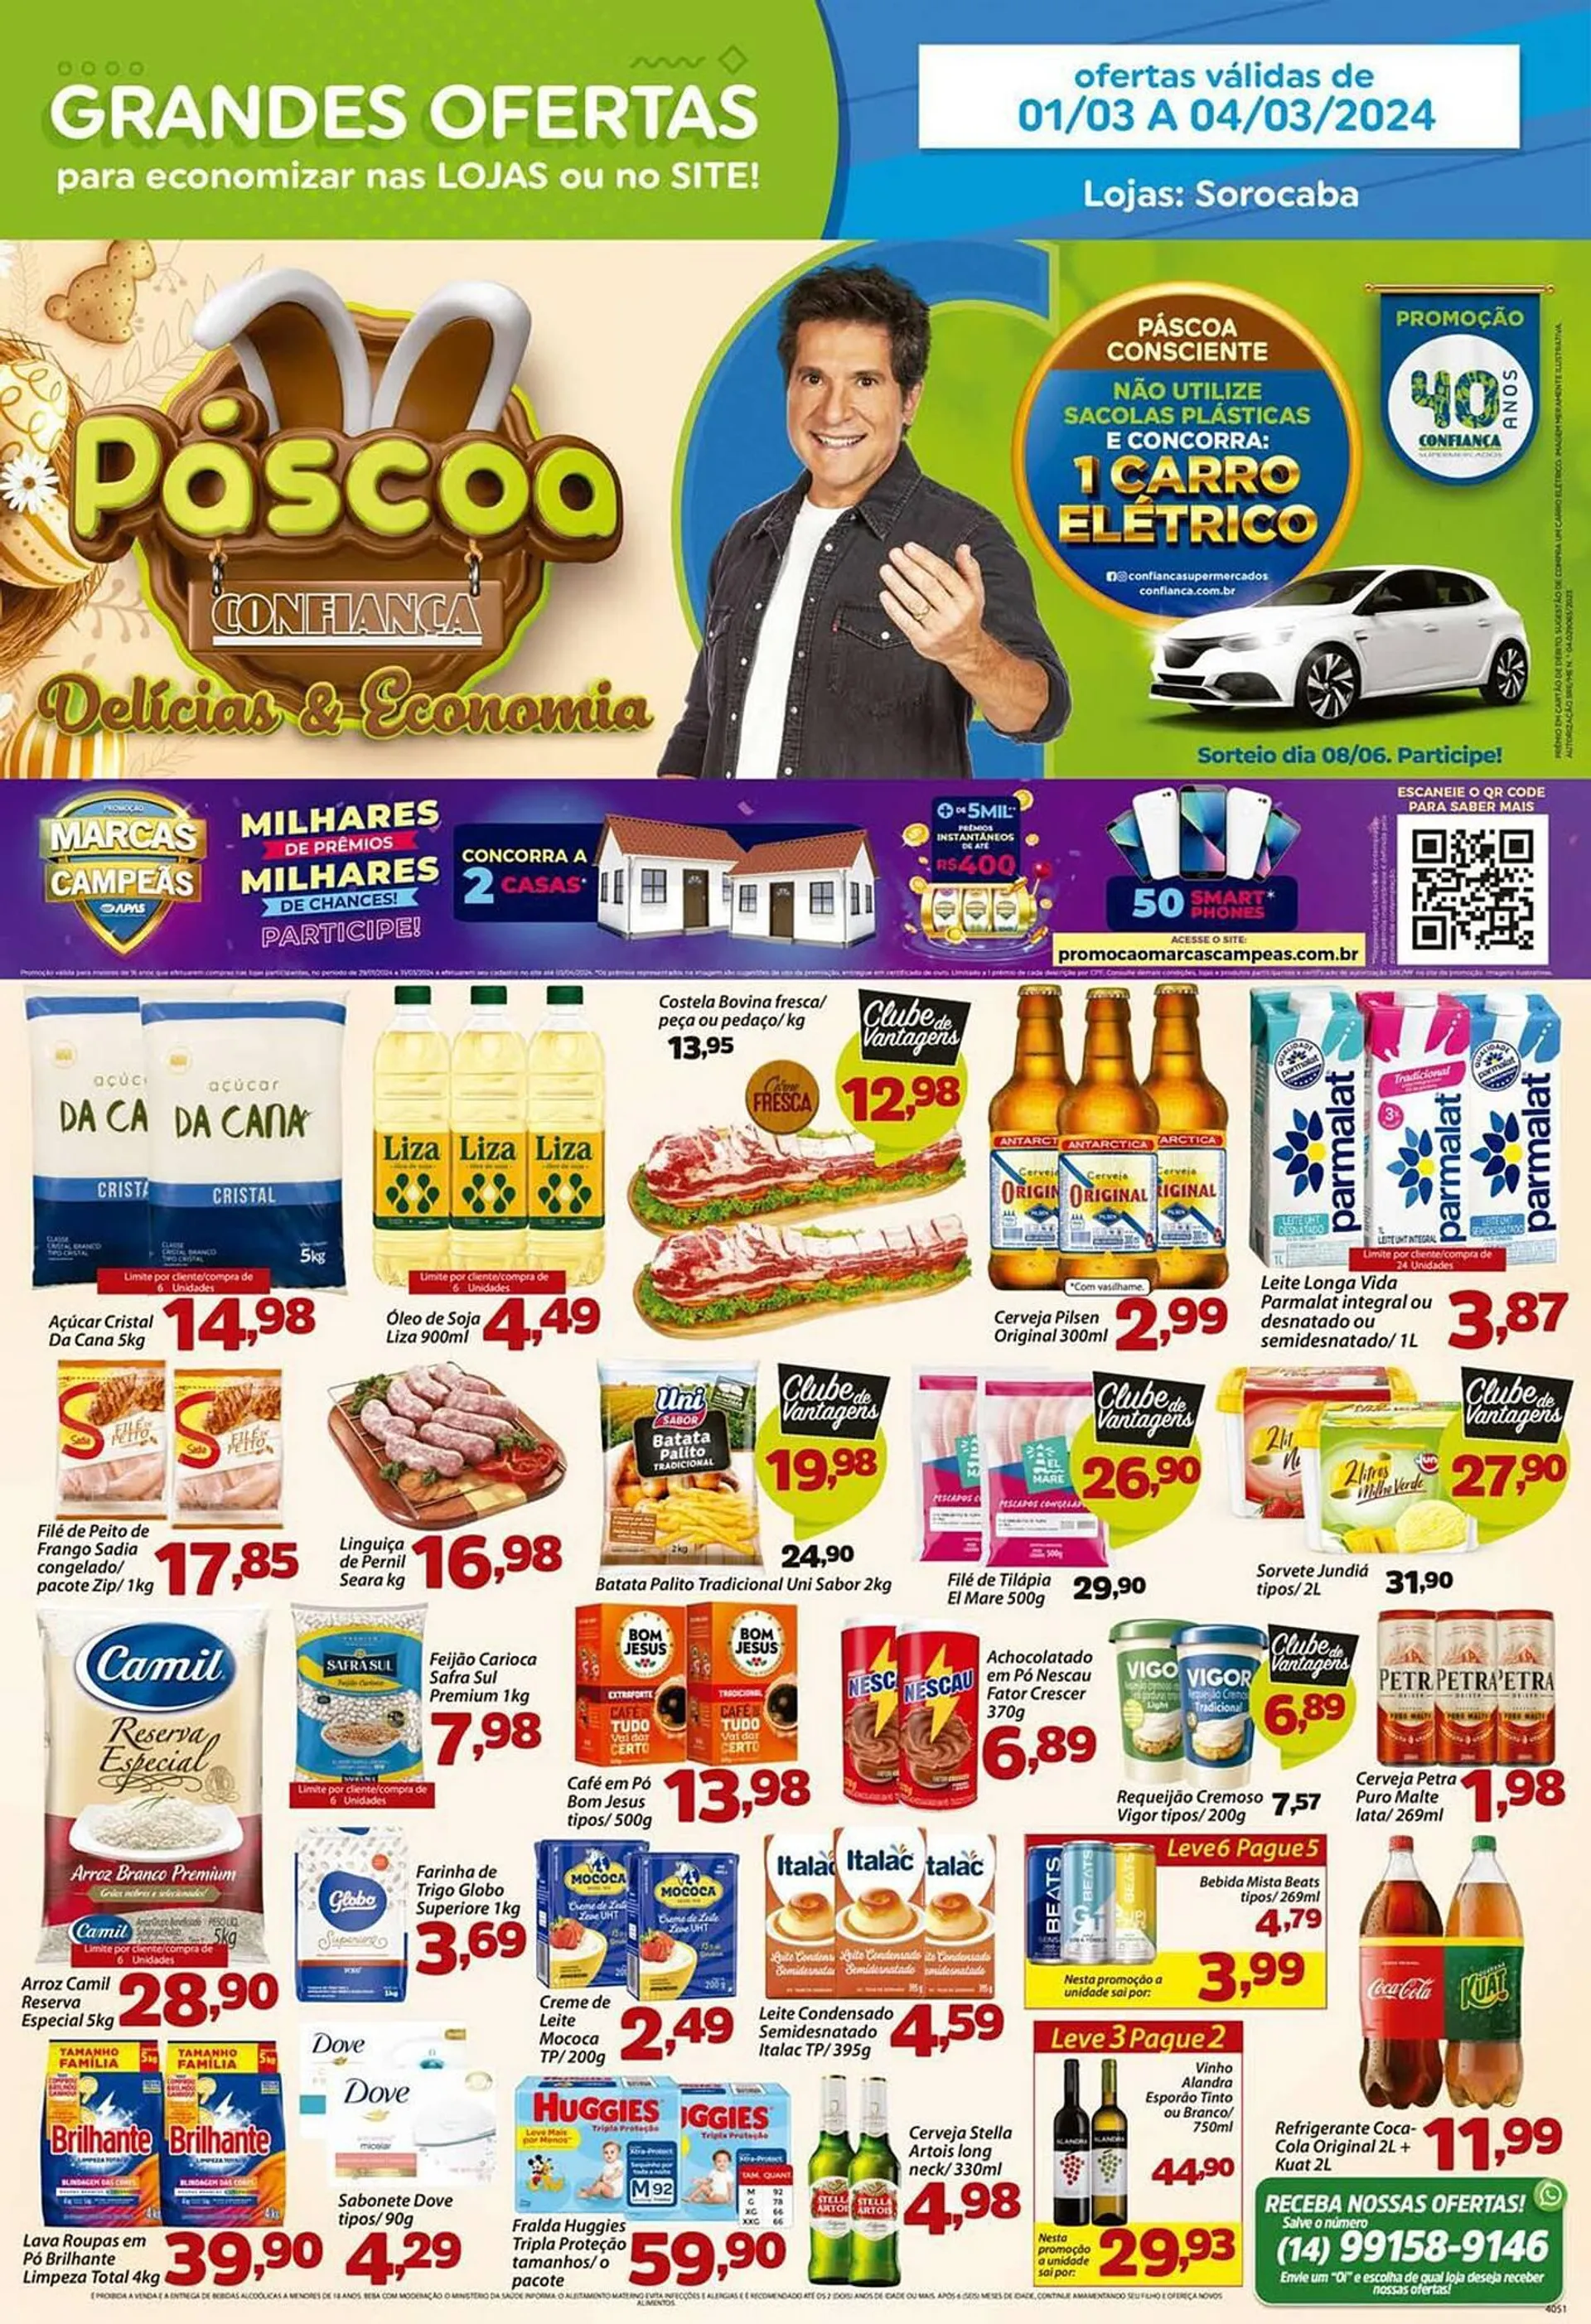 Encarte de Catálogo Confiança Supermercados 1 de março até 4 de março 2024 - Pagina 